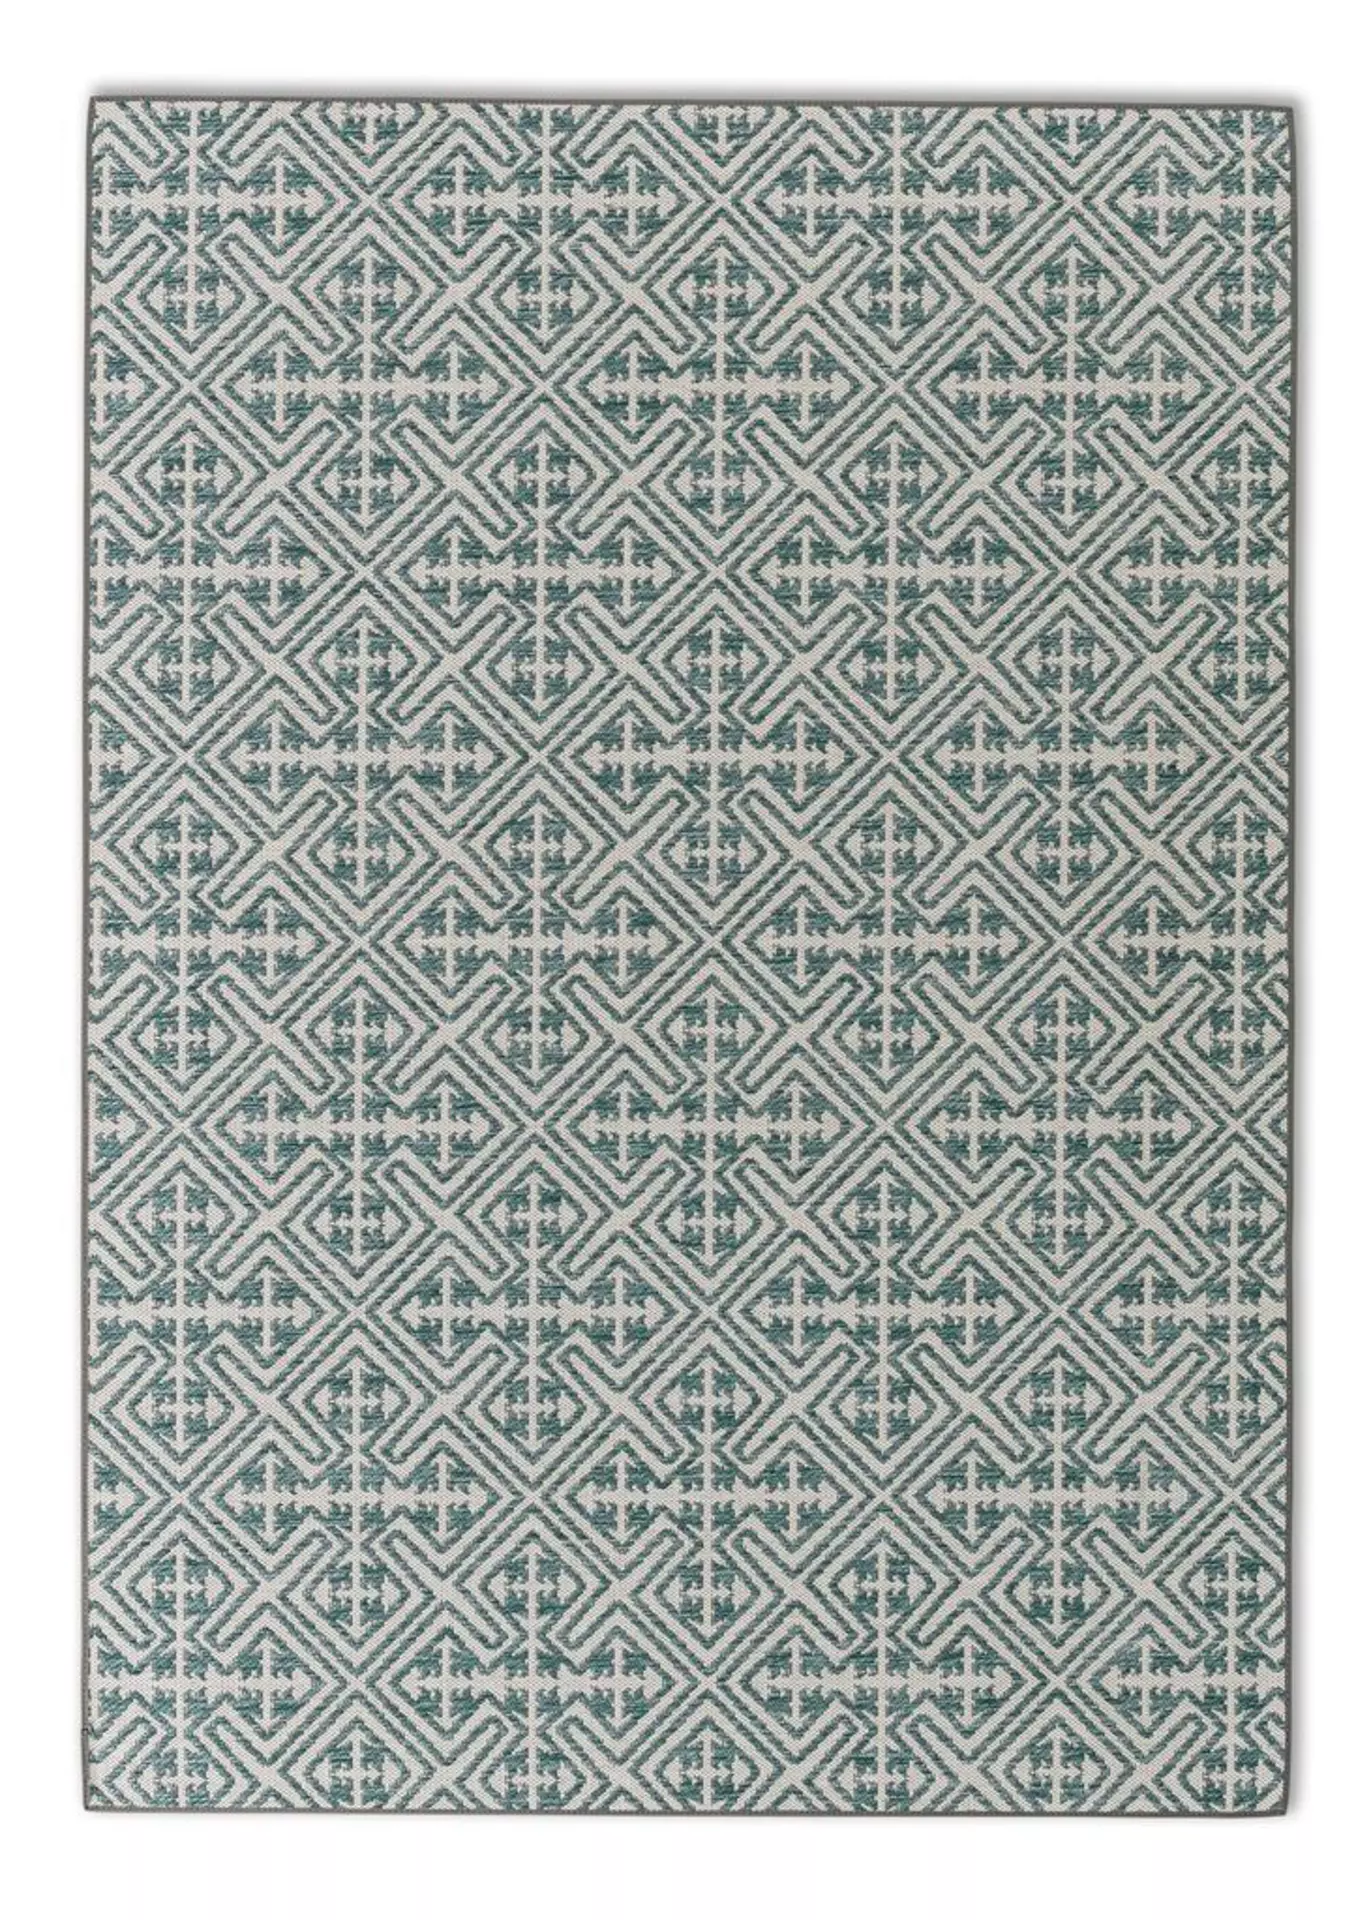 Outdoorteppich Parkland SCHÖNER WOHNEN-Kollektion Textil 120 x 180 cm